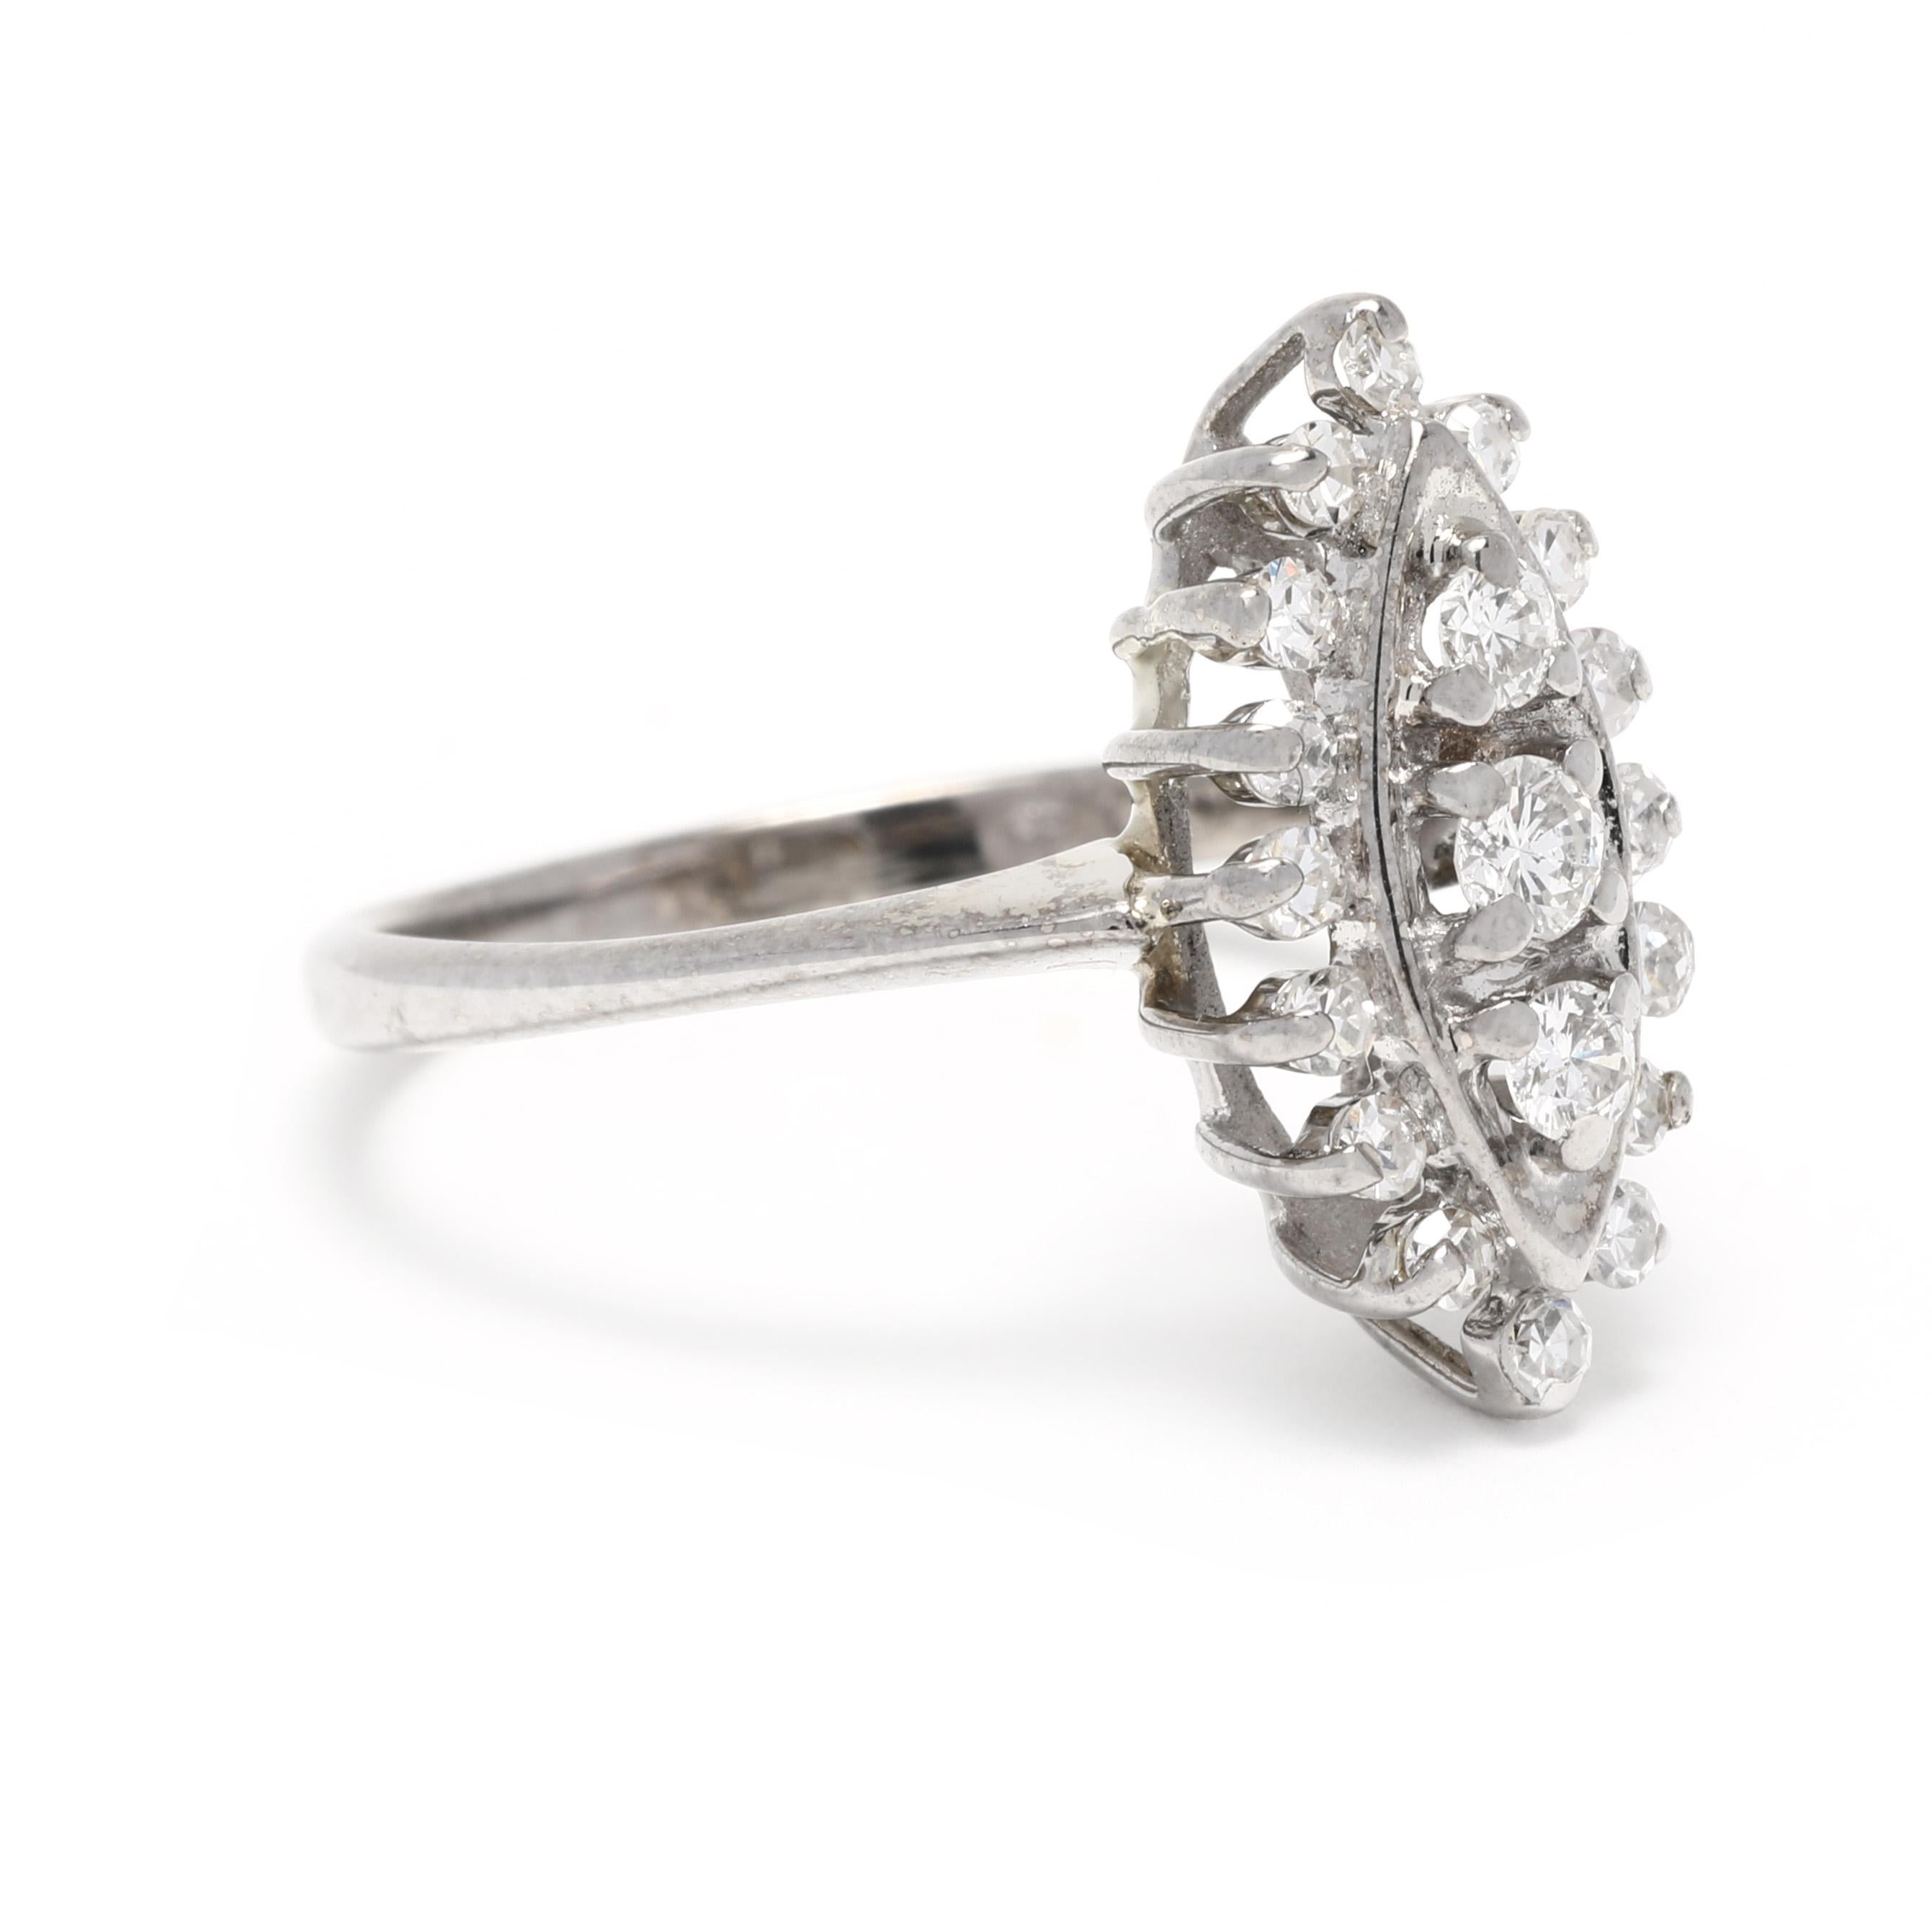 Diese schöne 0,38ctw Diamant Navette Ring ist in 14K Weißgold gefertigt und ist eine Größe 6. Diese wunderschöne Diamant-Cluster-Ring verfügt über eine Marquise Diamant-Einstellung und ist sicher, Köpfe zu drehen. Mit seinem atemberaubenden Design